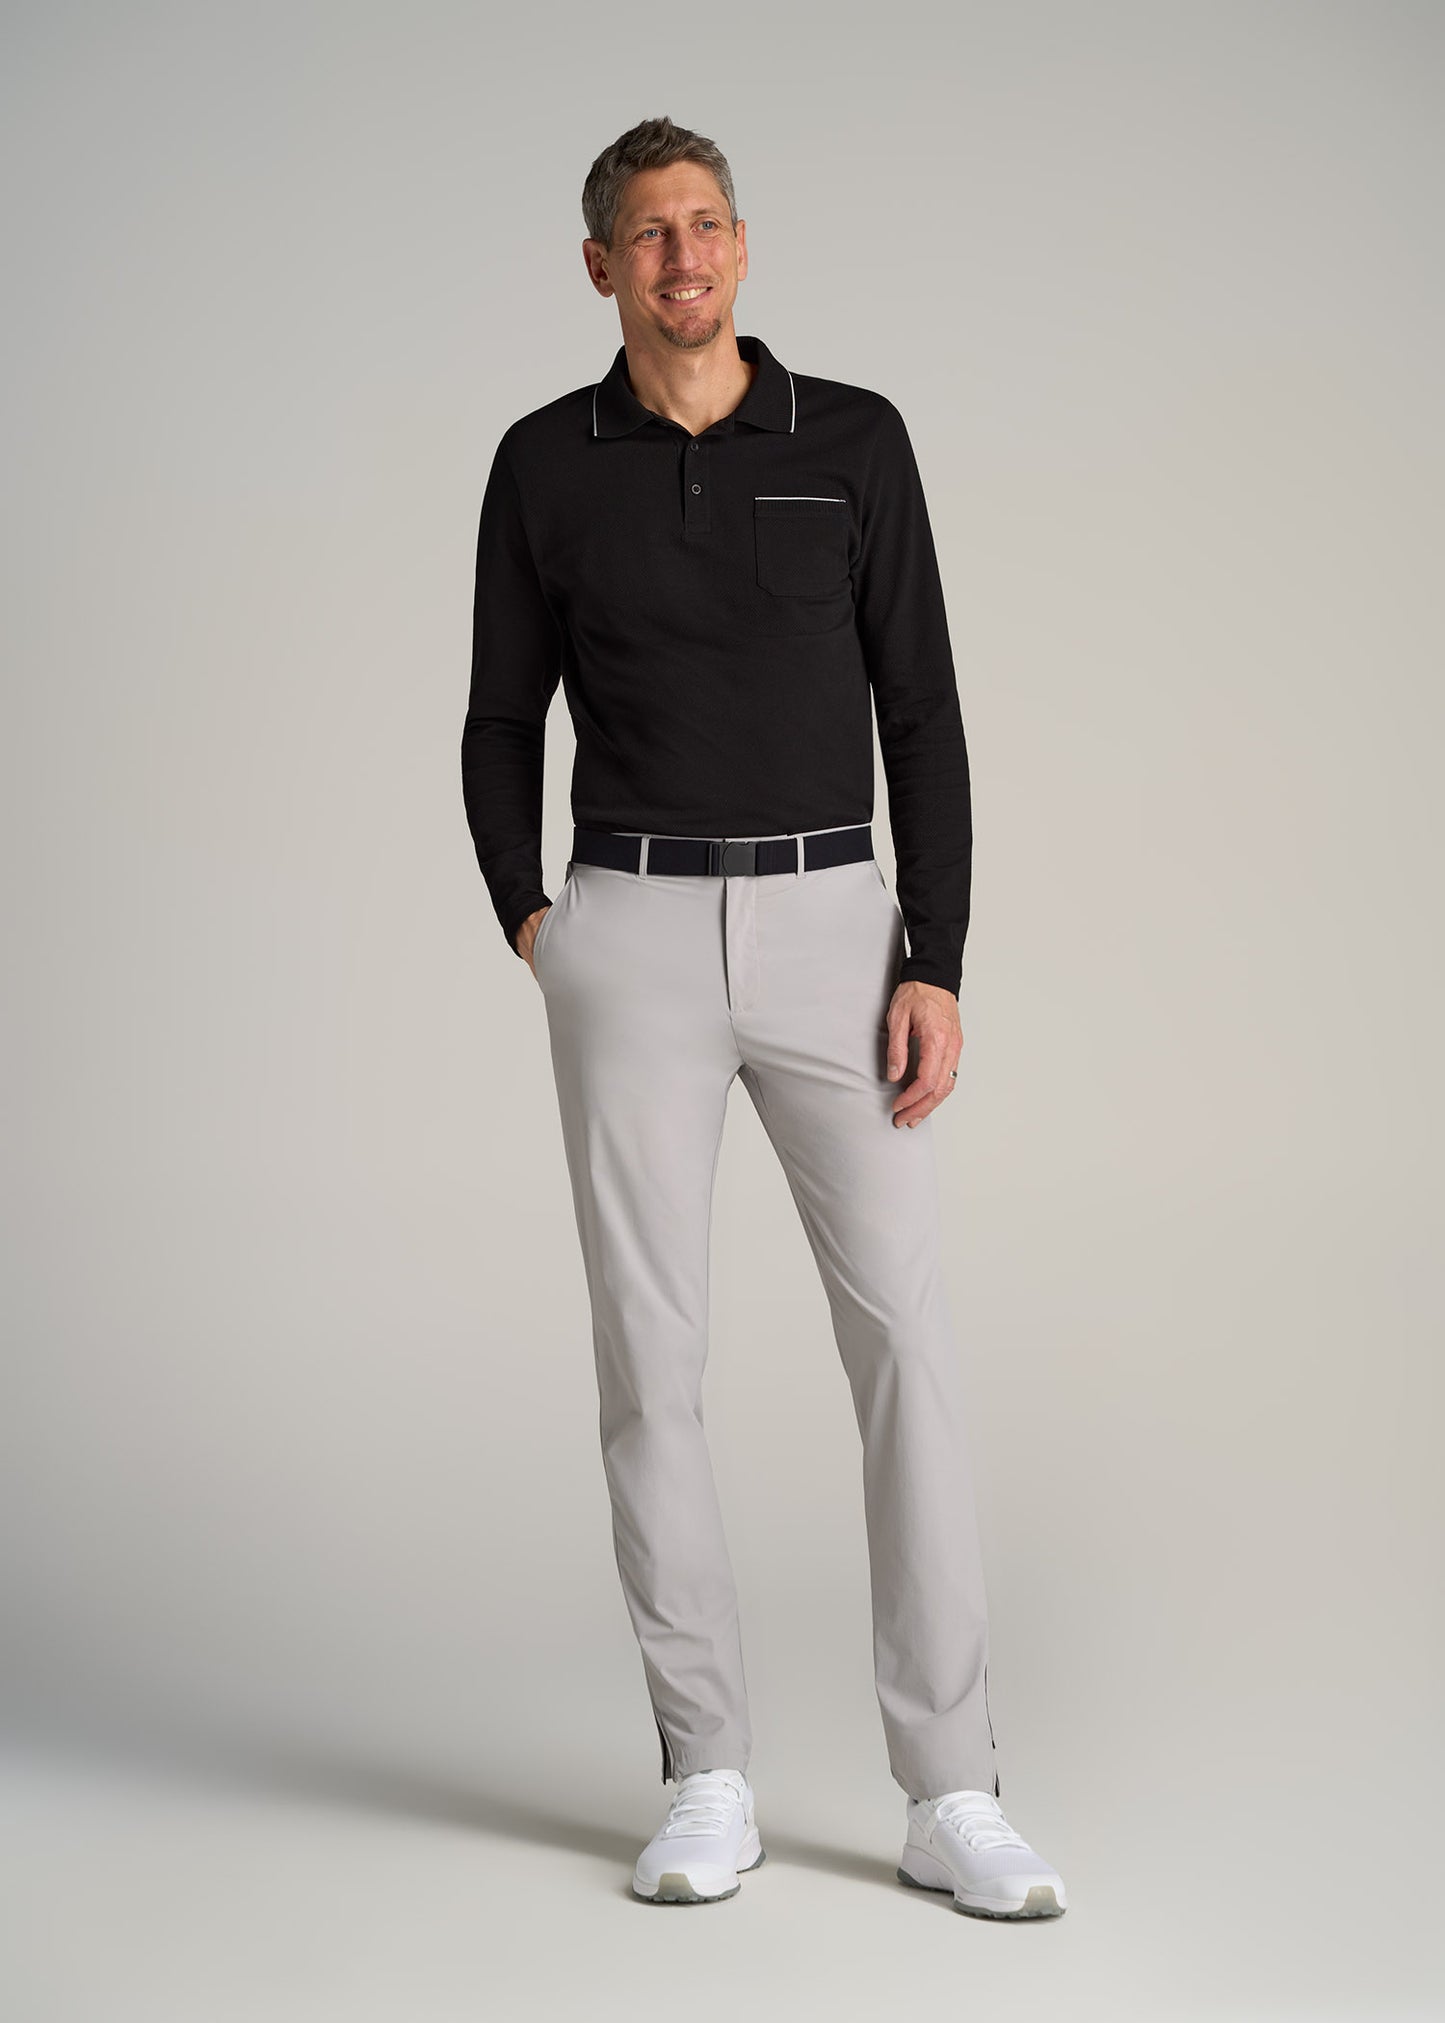 Tall Men's Pants: Casual Light Grey Pants